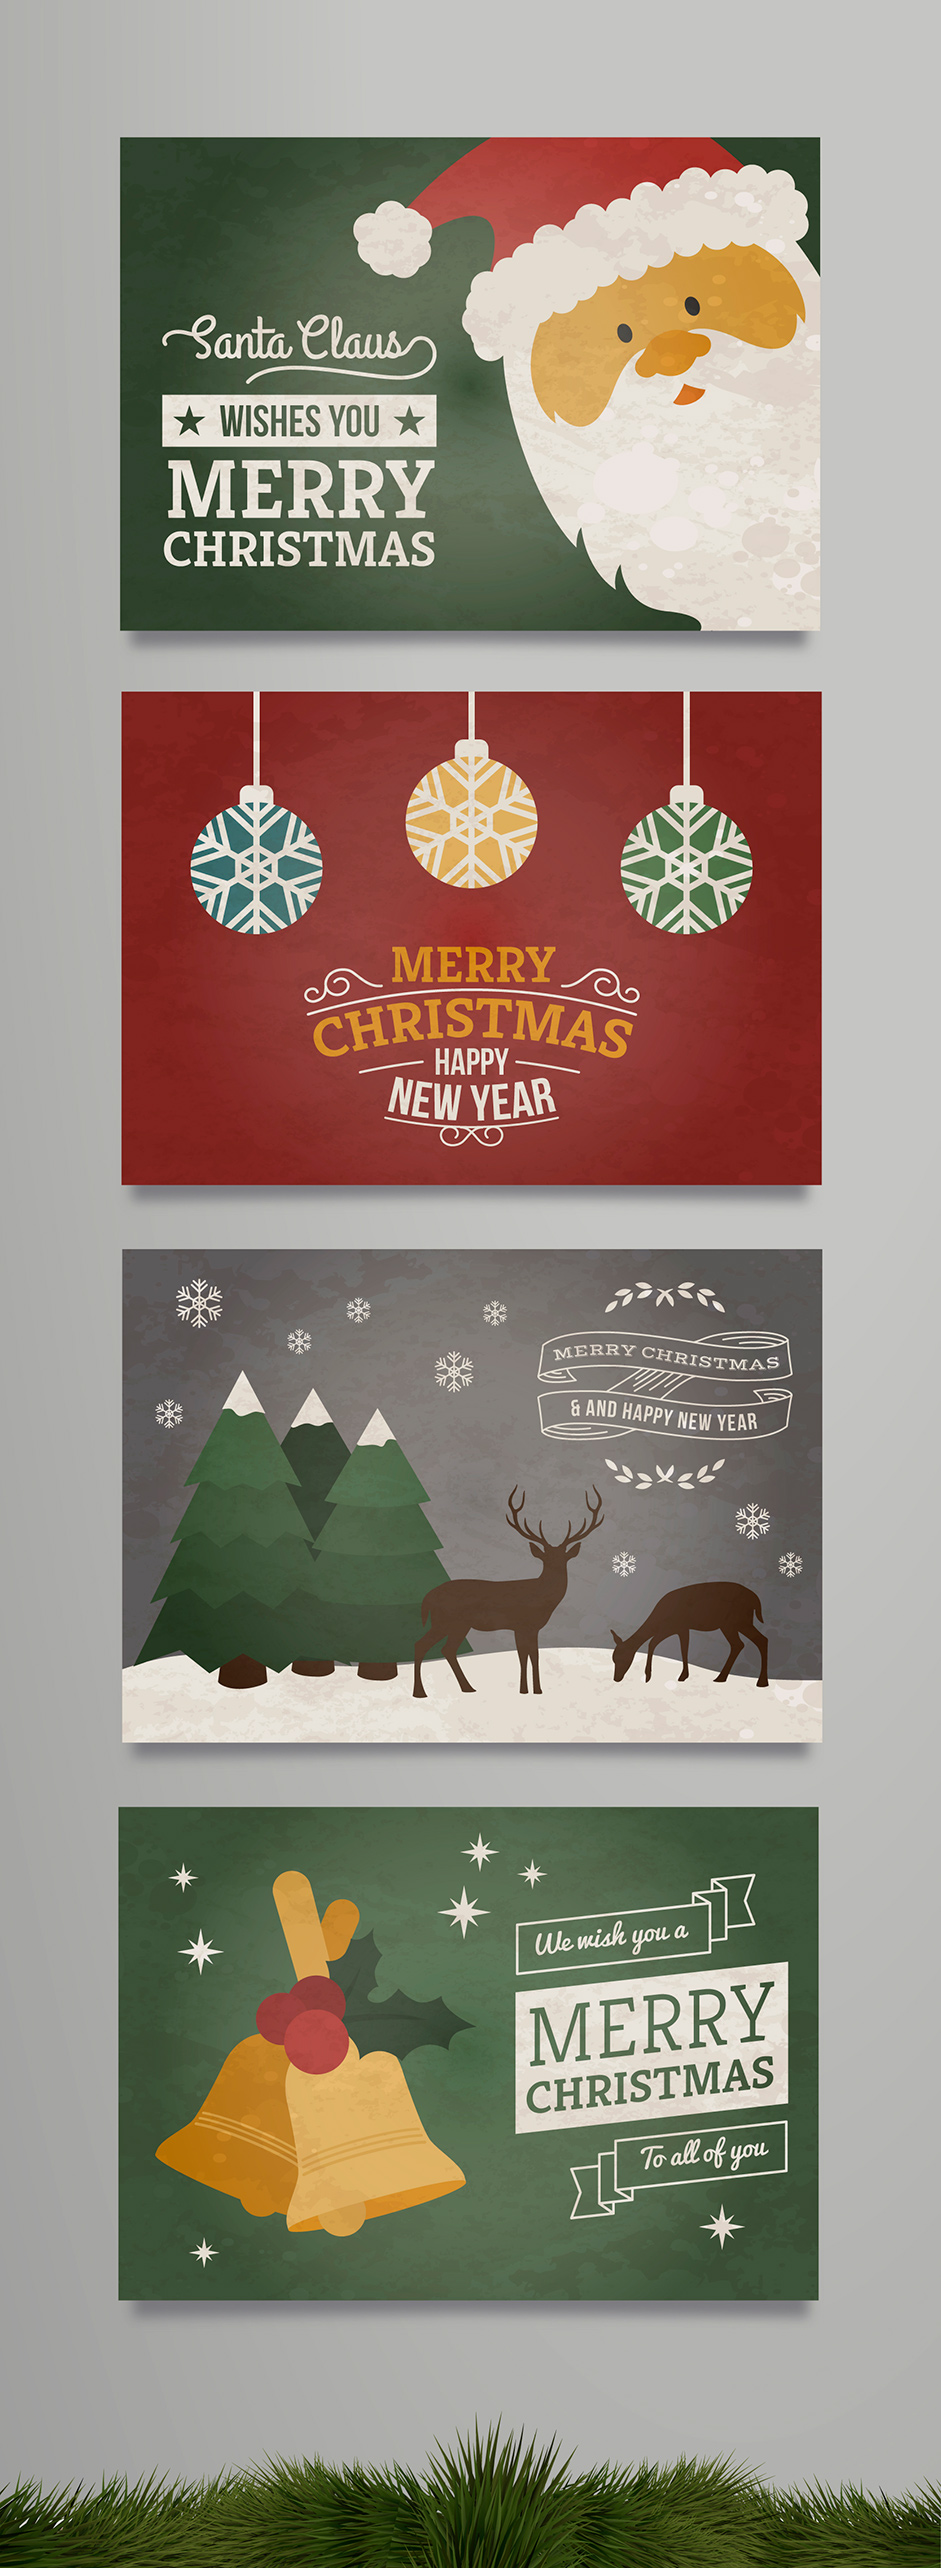 Freepik Christmas Cards